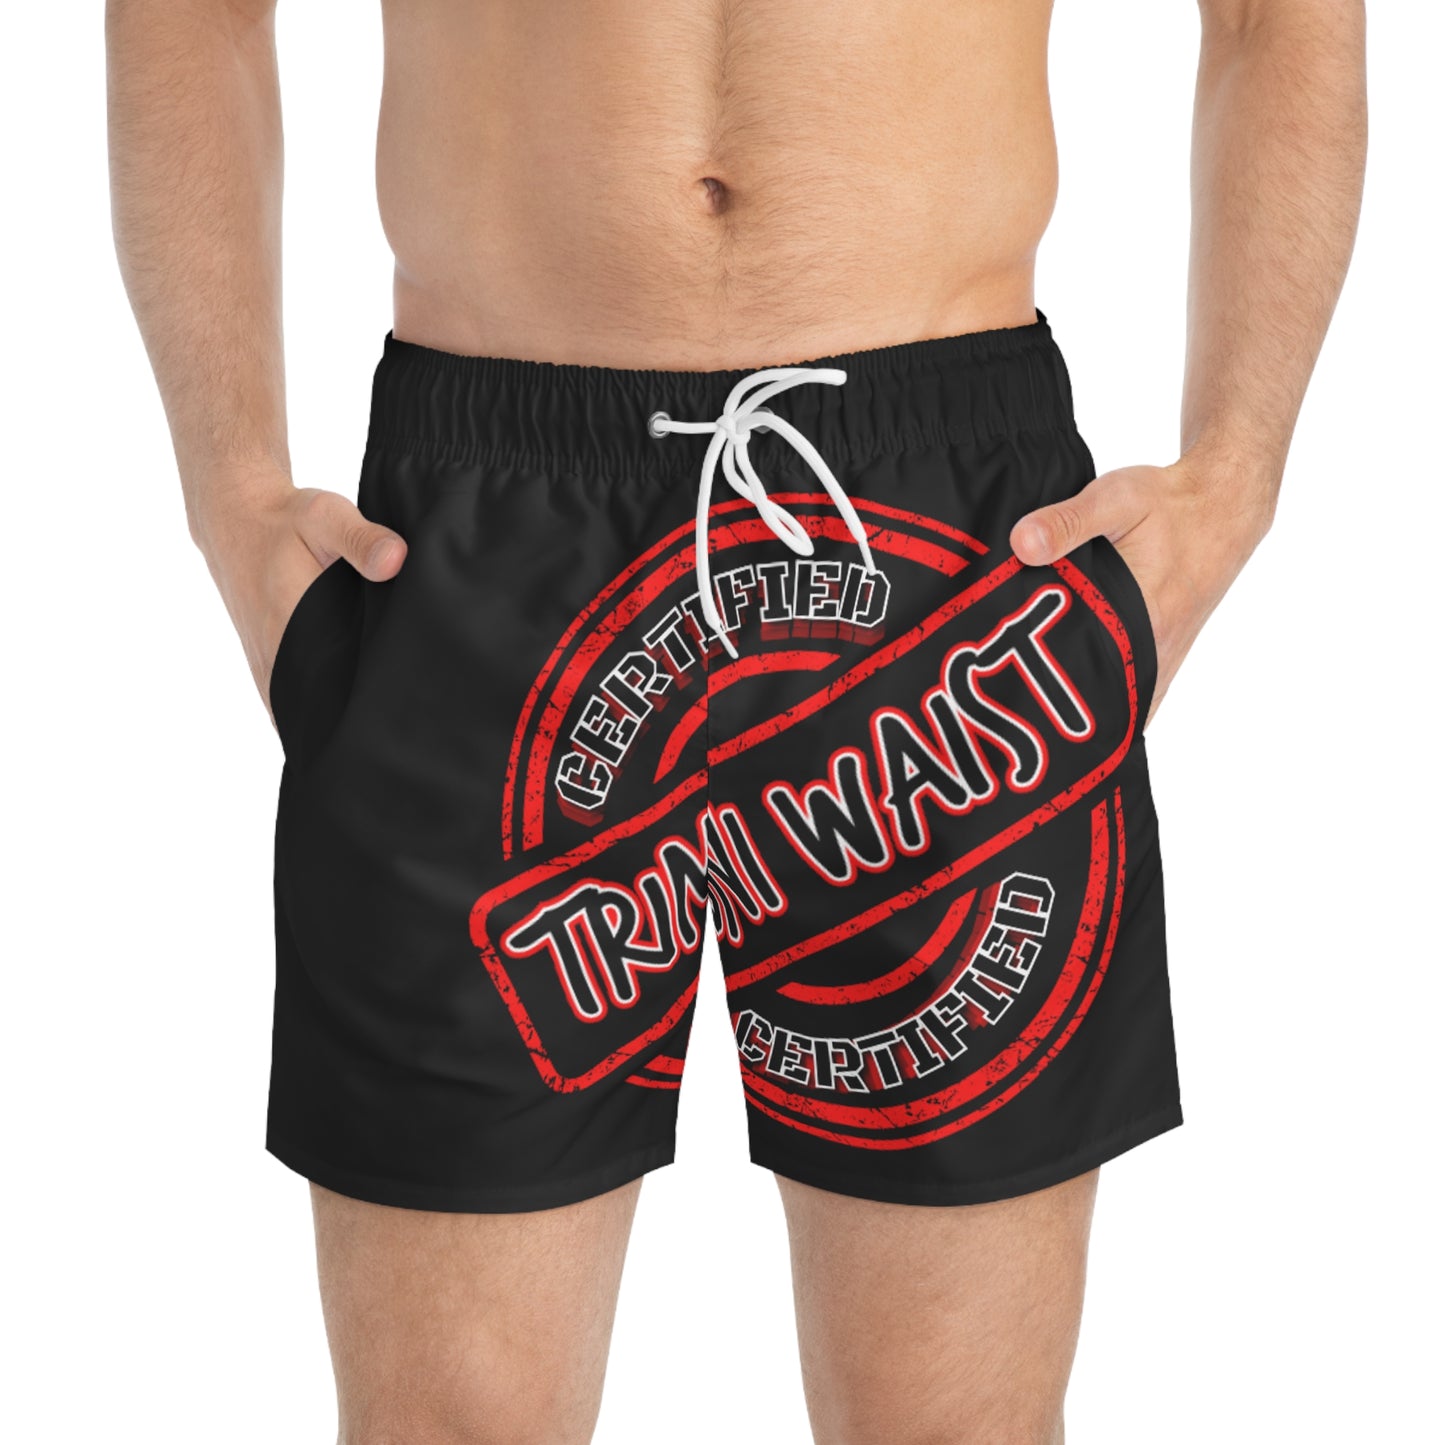 Keevo Certified -  Trini Waist -  Men's Fete Shorts (black)